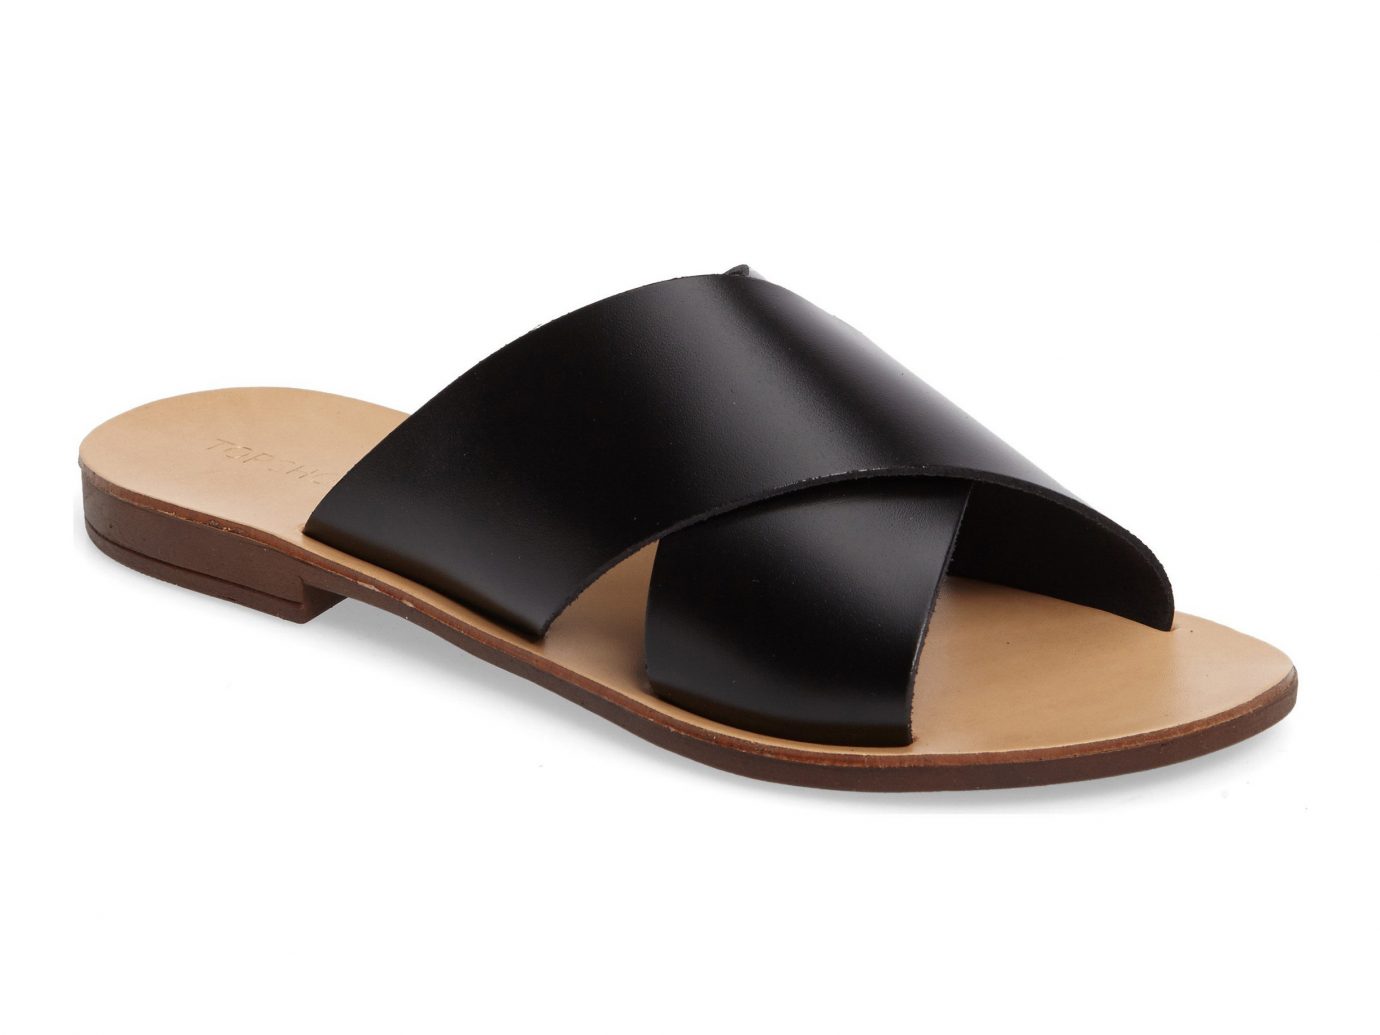 Spring Travel Style + Design Travel Shop footwear brown shoe sandal product design product outdoor shoe slide sandal